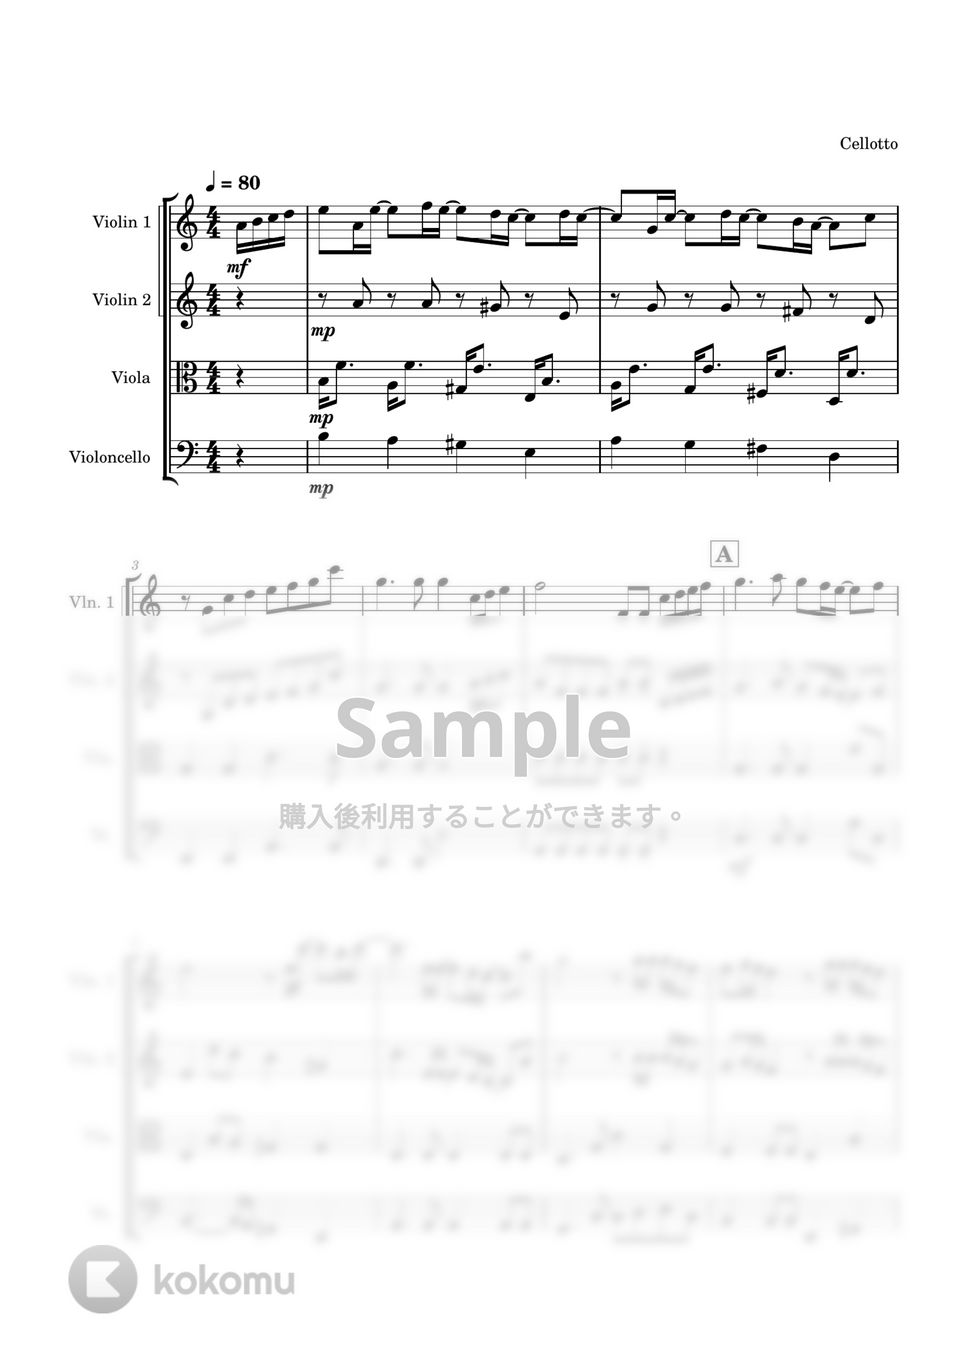 いきものがかり - ありがとう (弦楽四重奏) by Cellotto